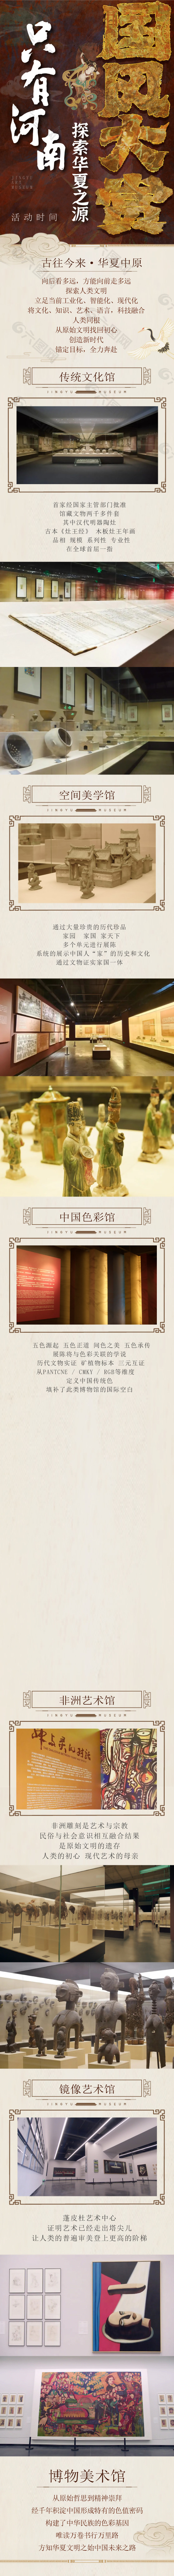 国风大赏古典博物馆宣传海报